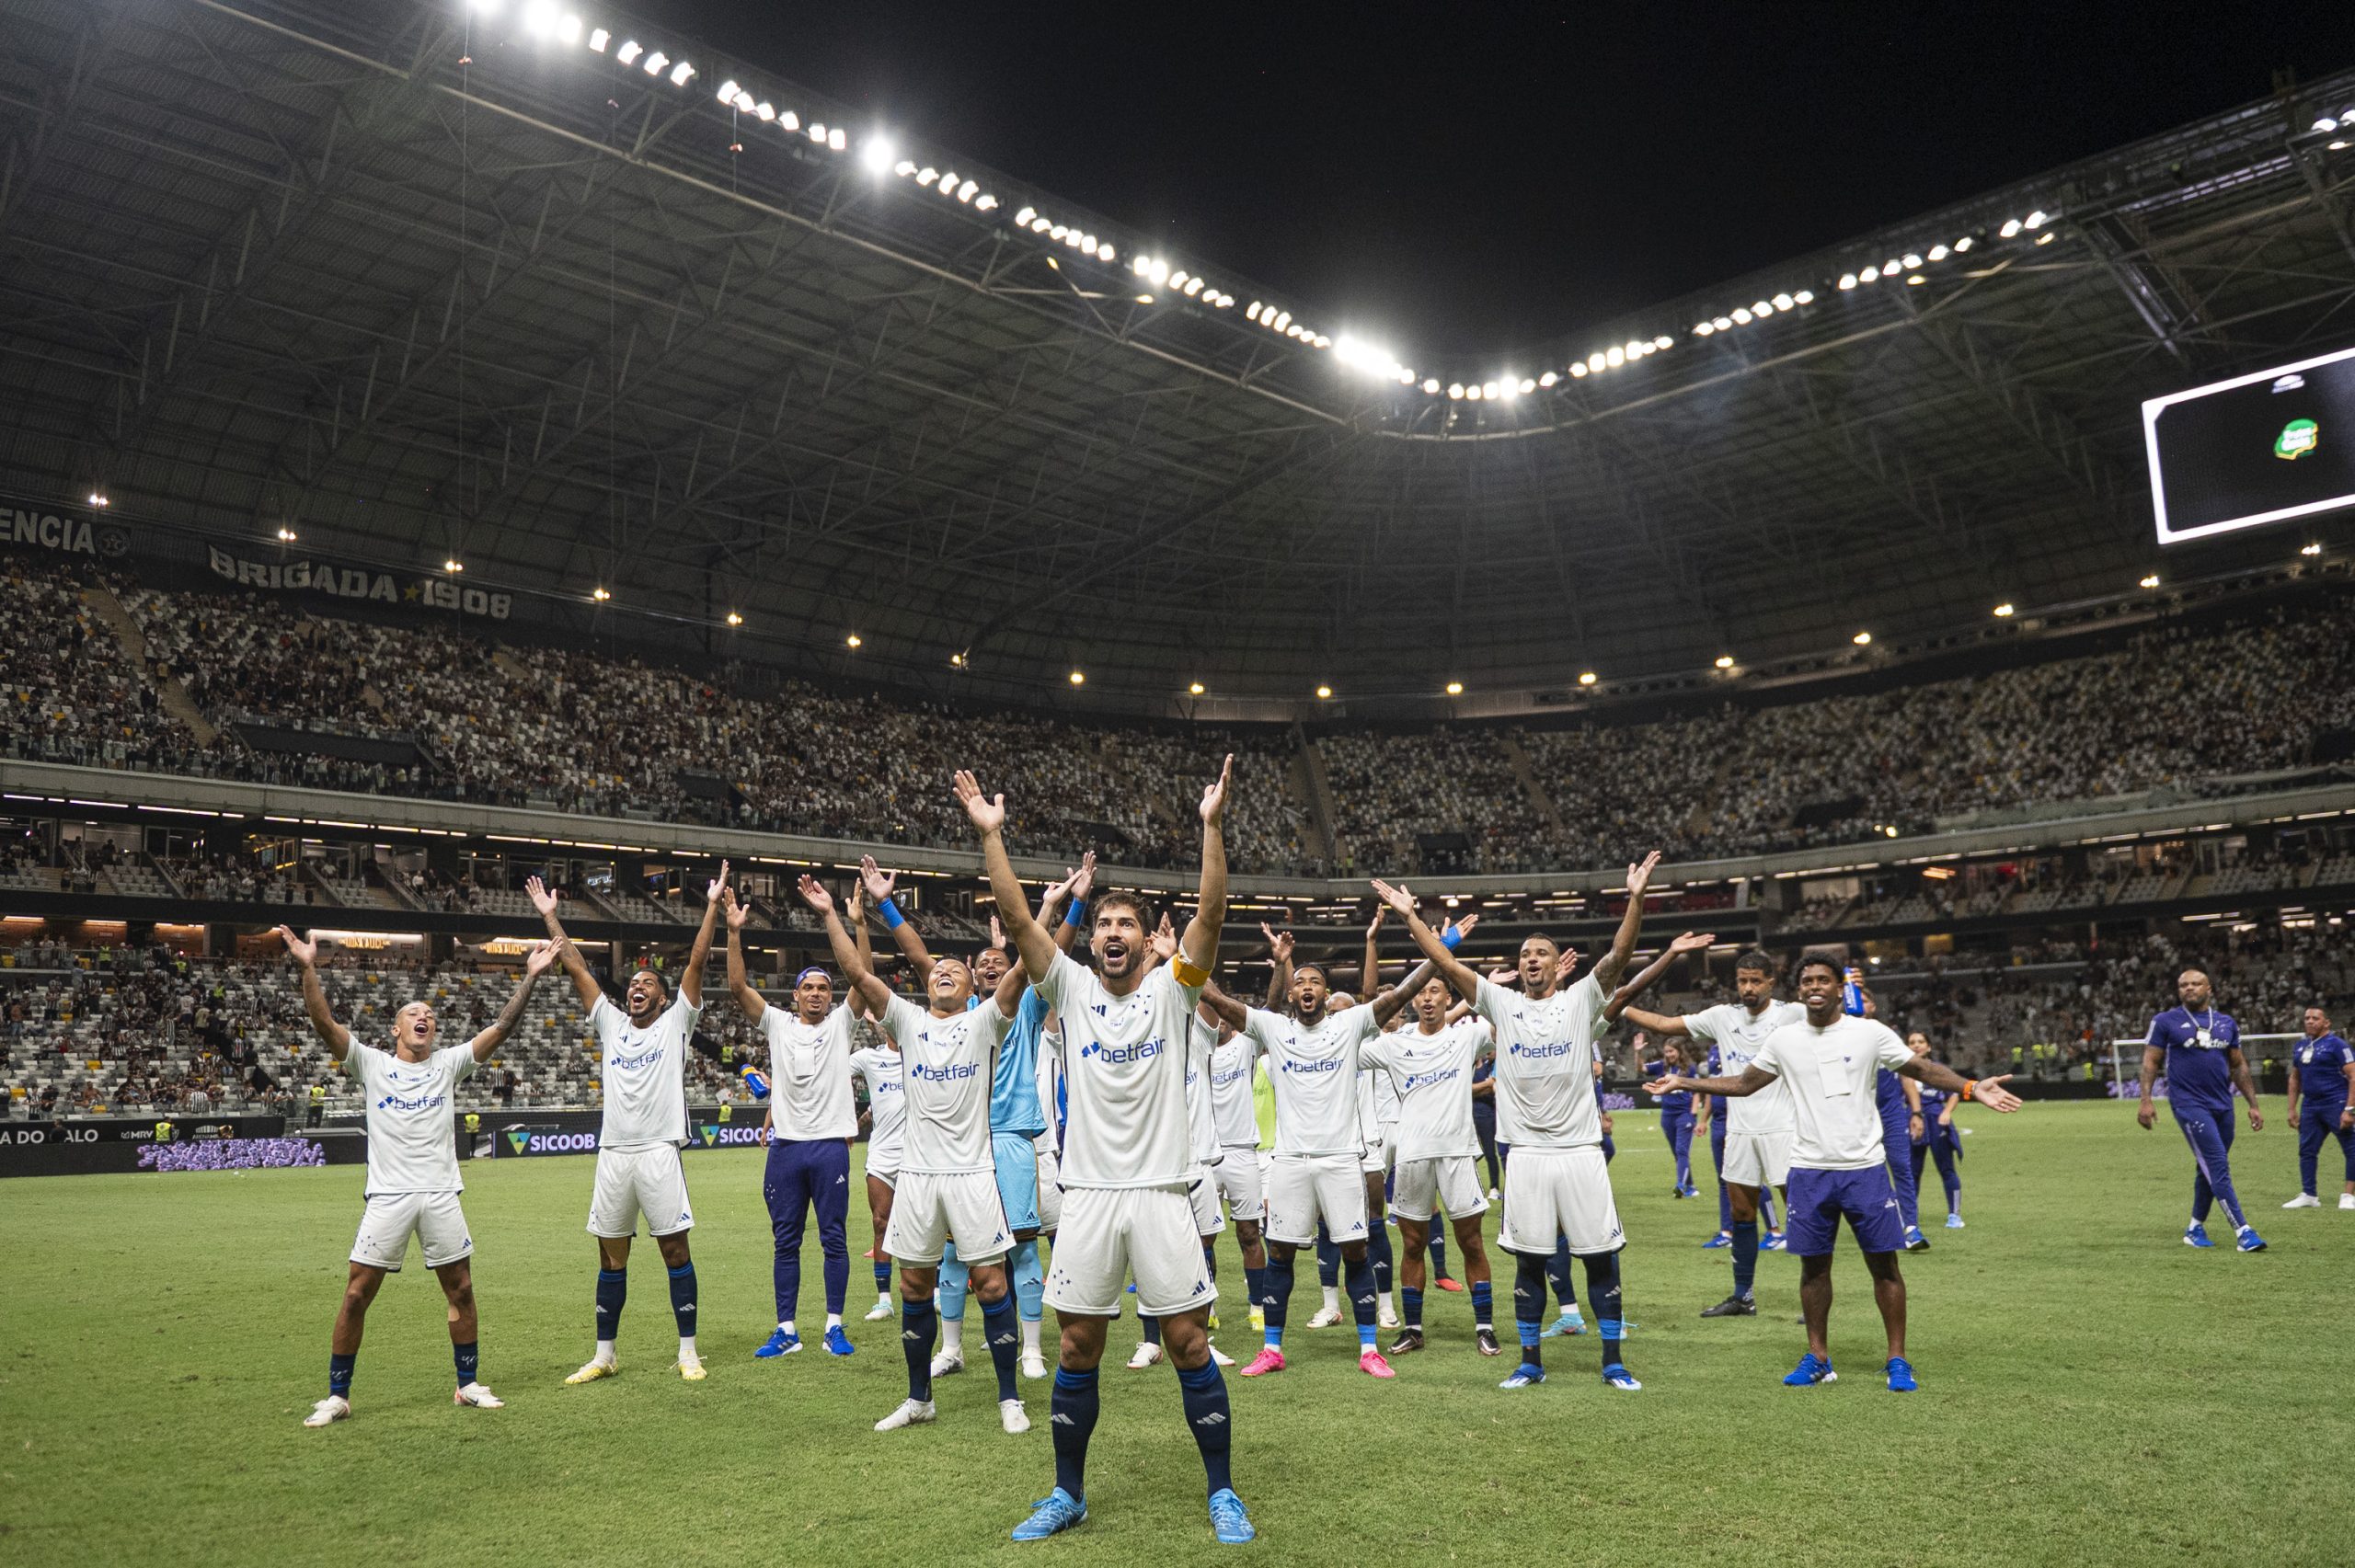 Jogadores do Cruzeiro comemorando pós vitória contra o Atlético (Foto: Staff Images / Cruzeiro)